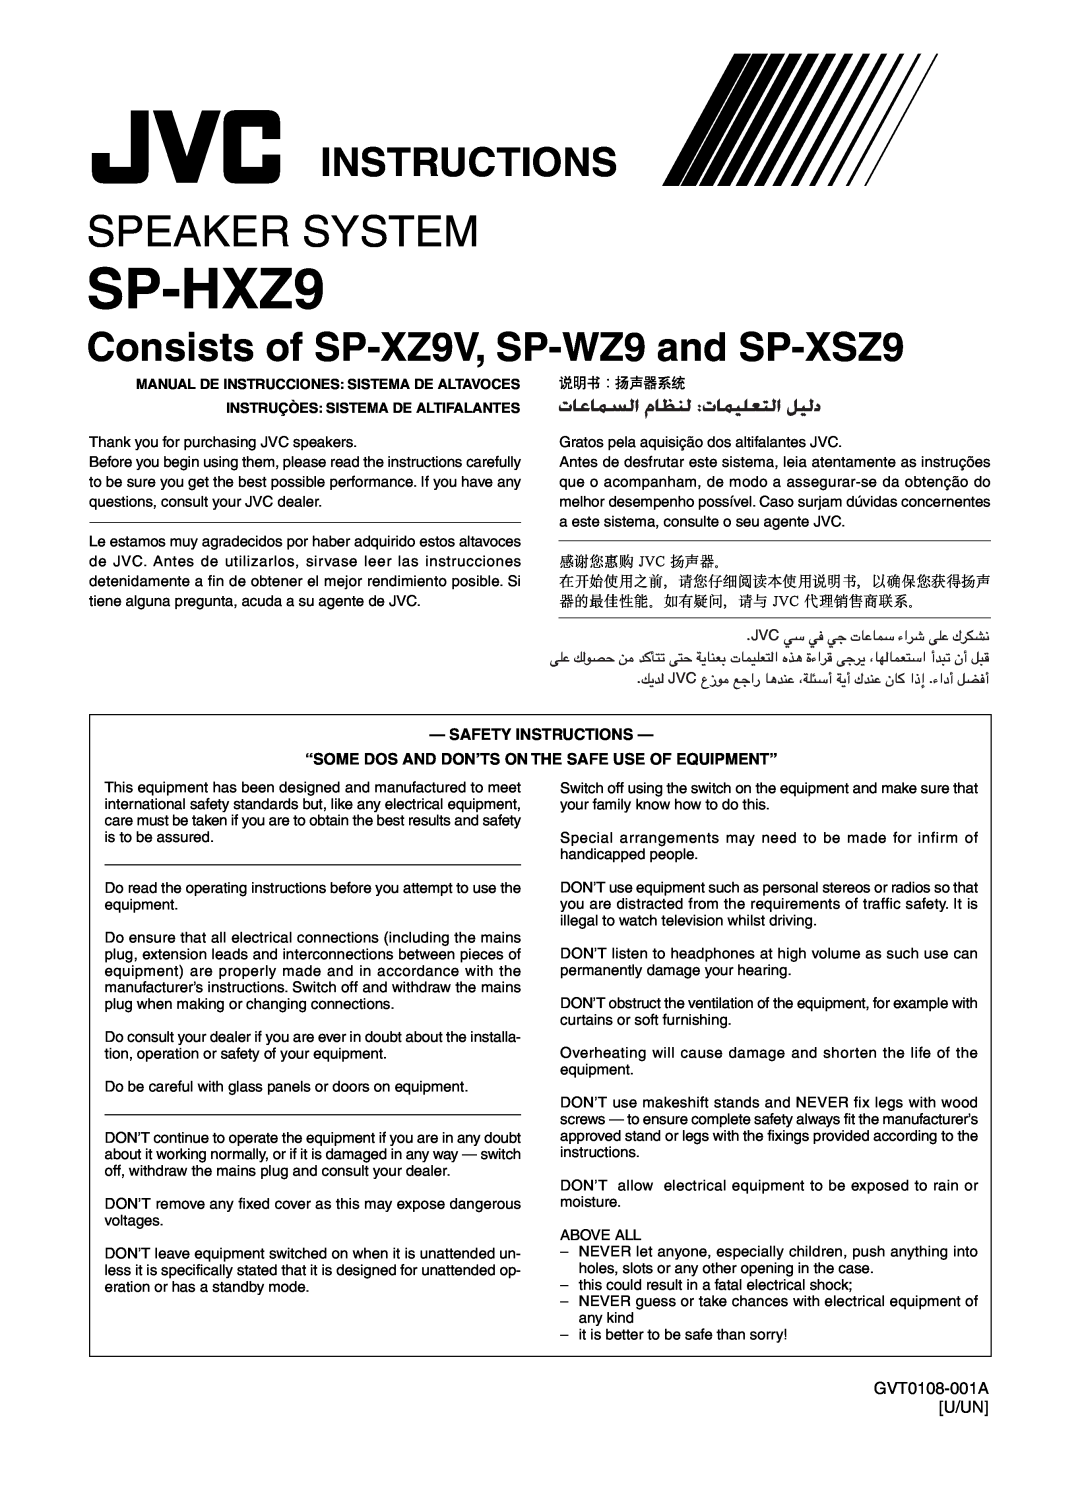 JVC CA-HXZ7V Speaker System, Consists of SP-XZ9V, SP-WZ9and SP-XSZ9, SP-HXZ9, Safety Instructions, GVT0108-001AU/UN 